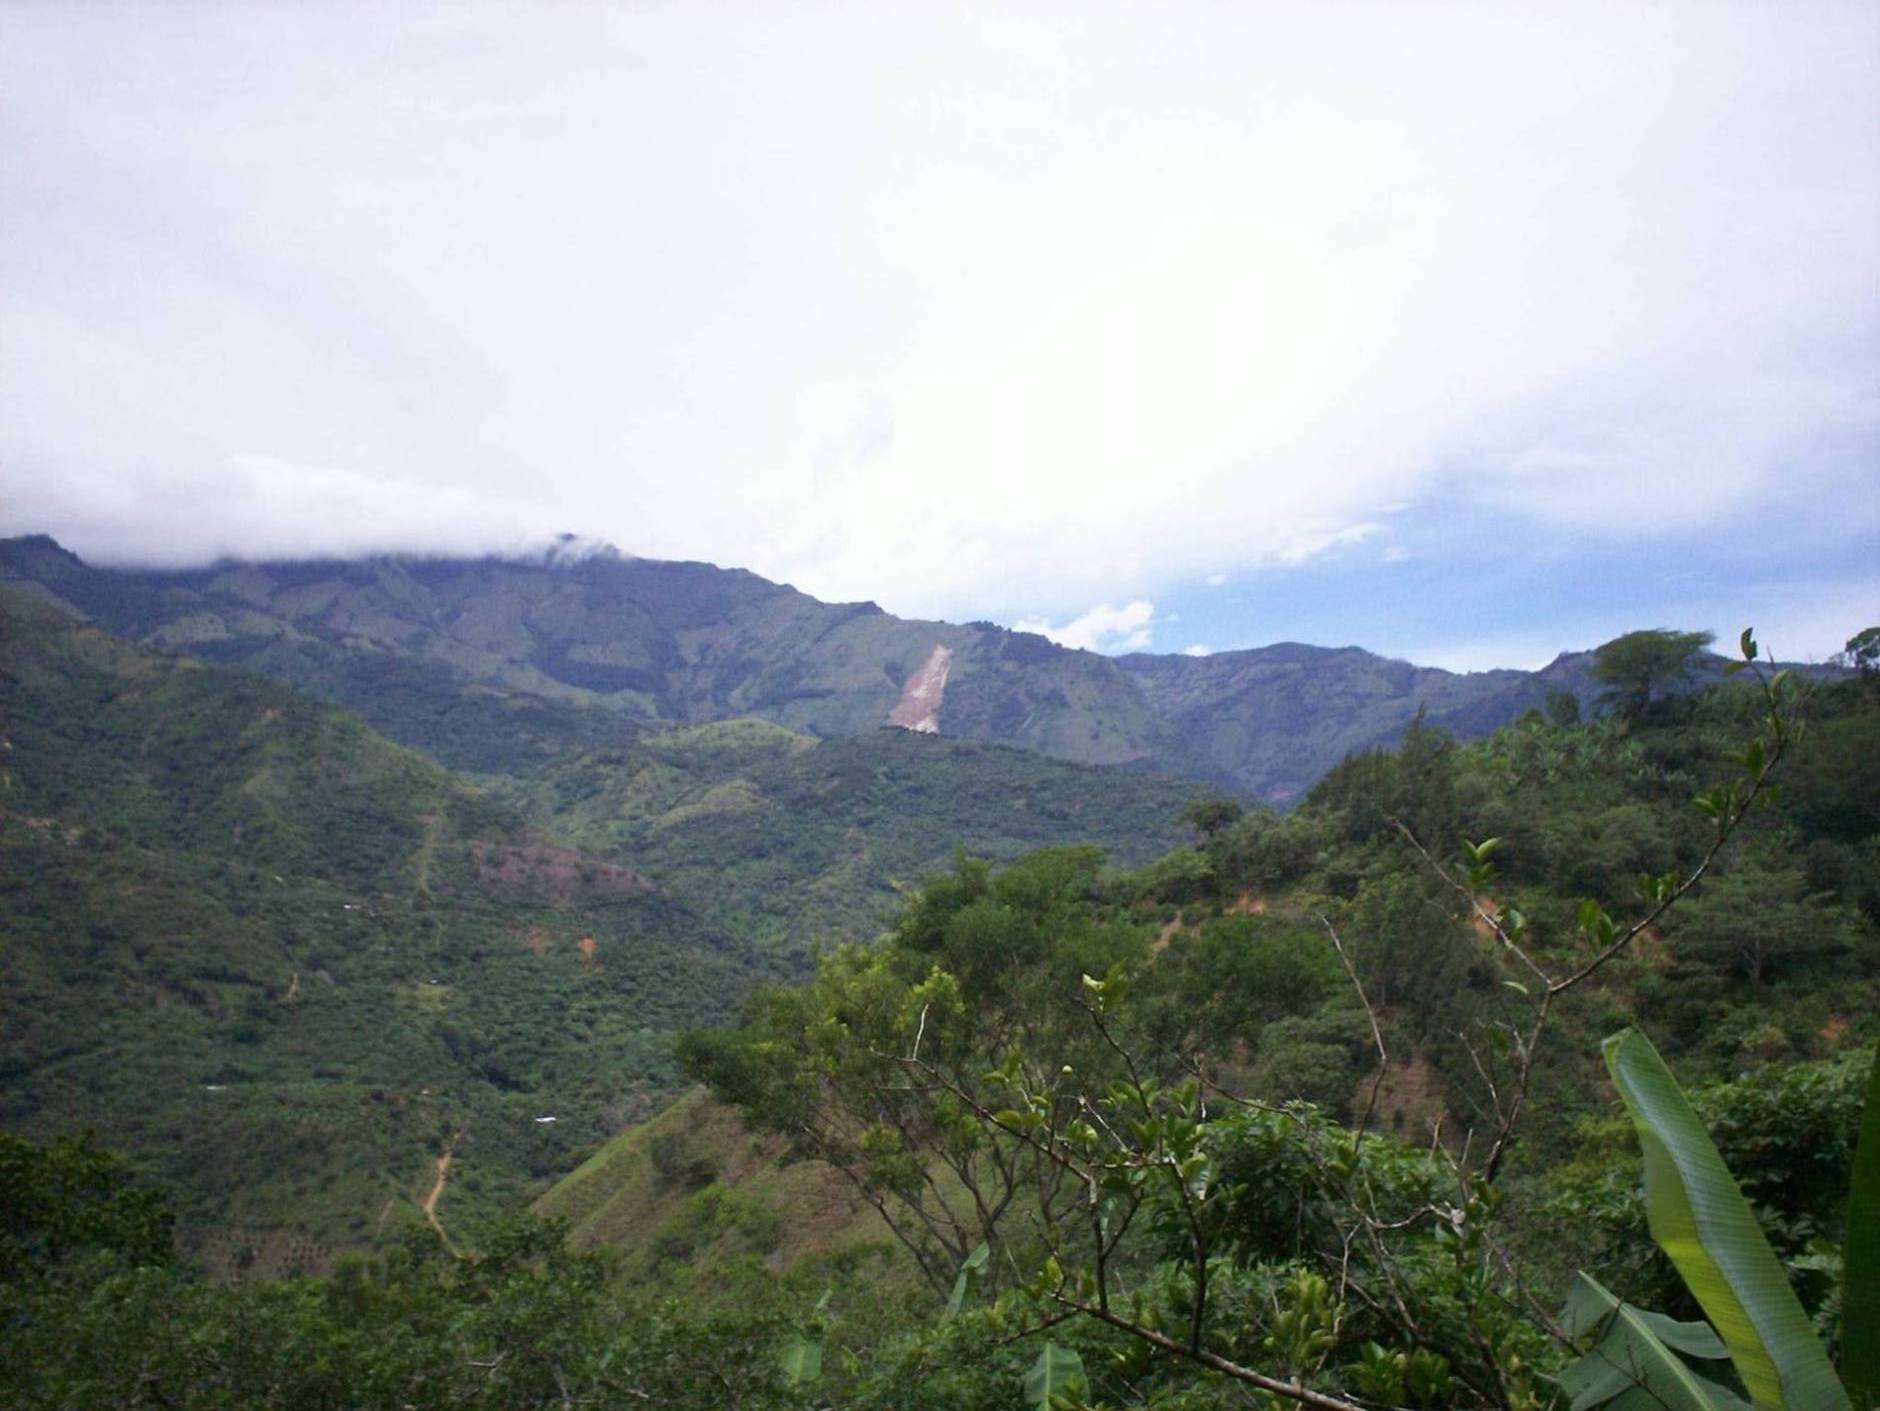 Foto de San Ignacio de Acosta (San José), Costa Rica